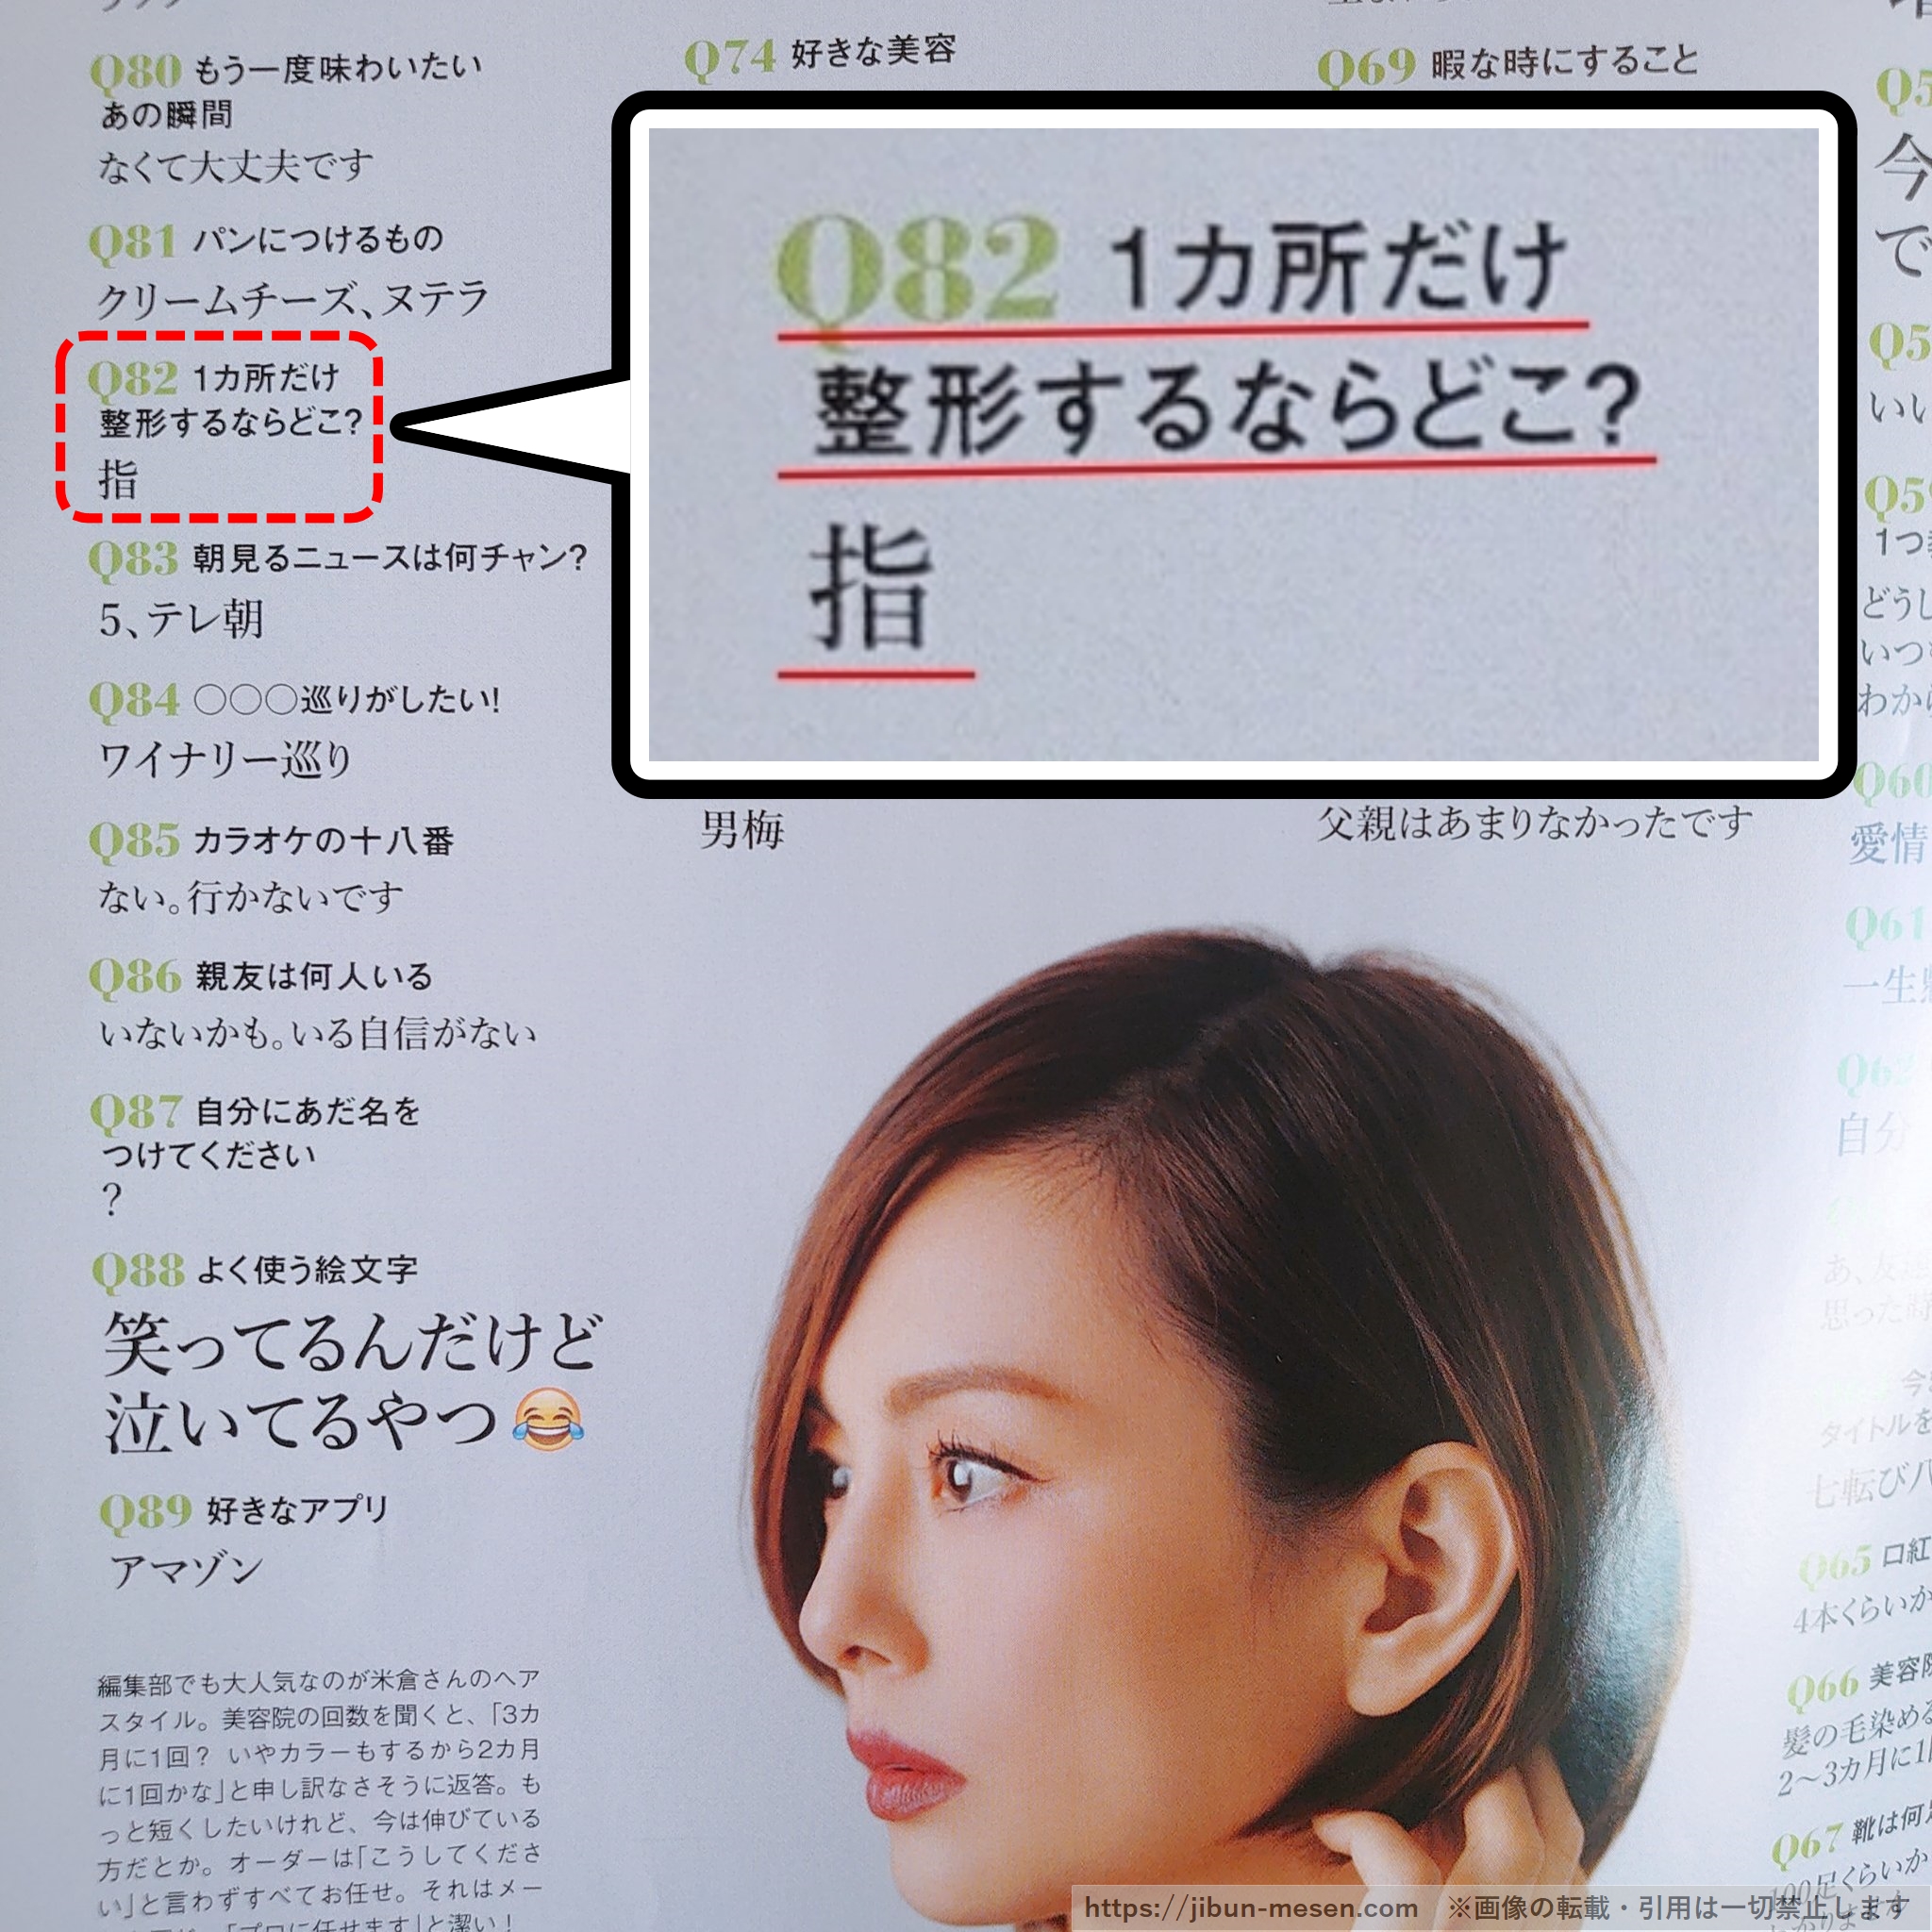 米倉涼子のインタビュー記事の画像